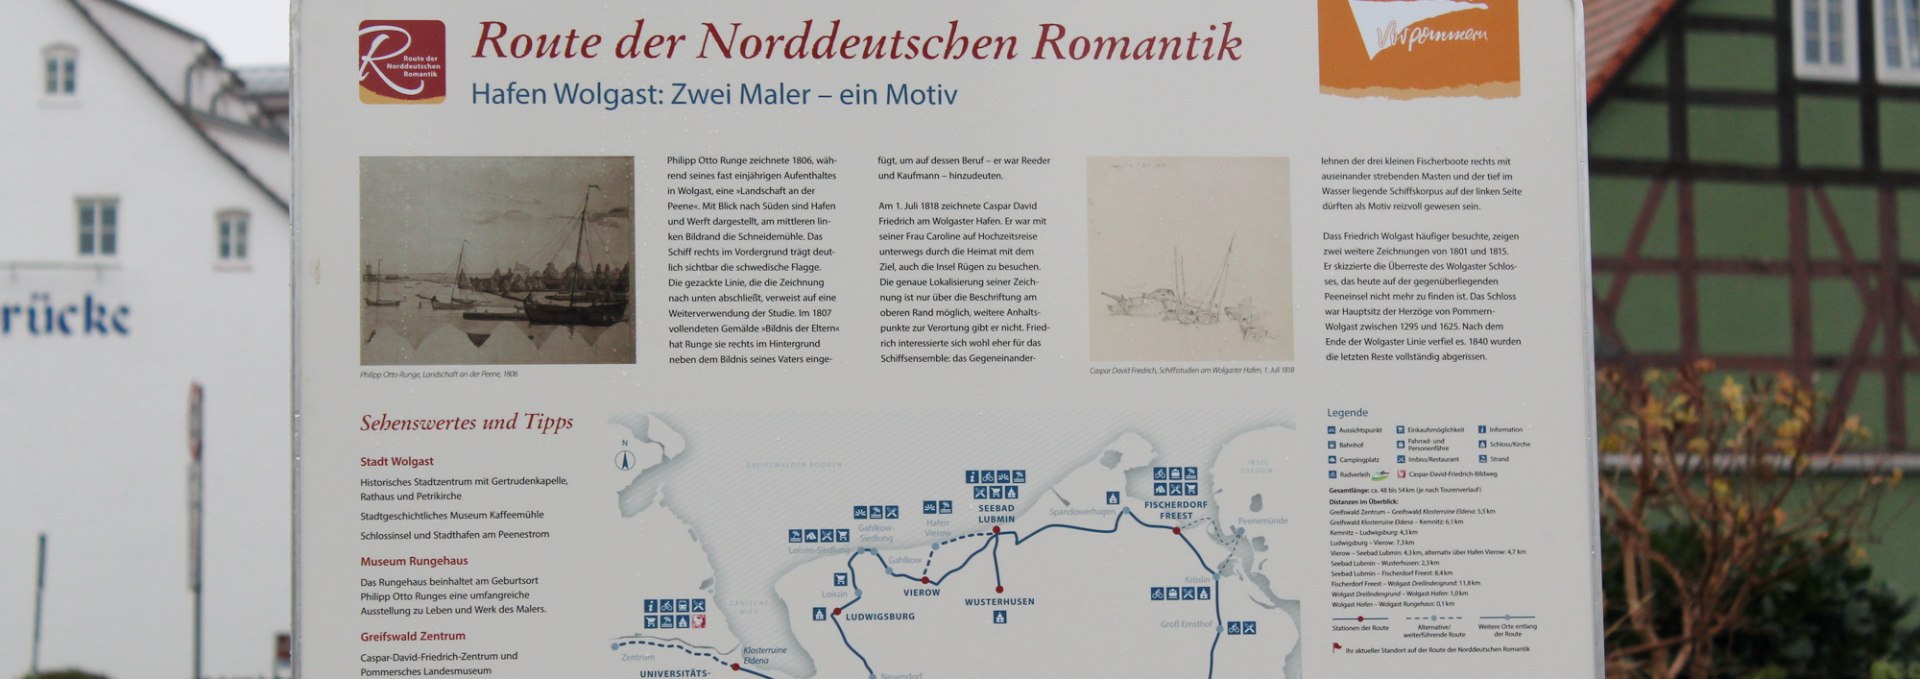 Auf der Route der Norddeutschen Romantik - Infoschild zur Route am Hafen Wolgast, © tvv-anne wiegert